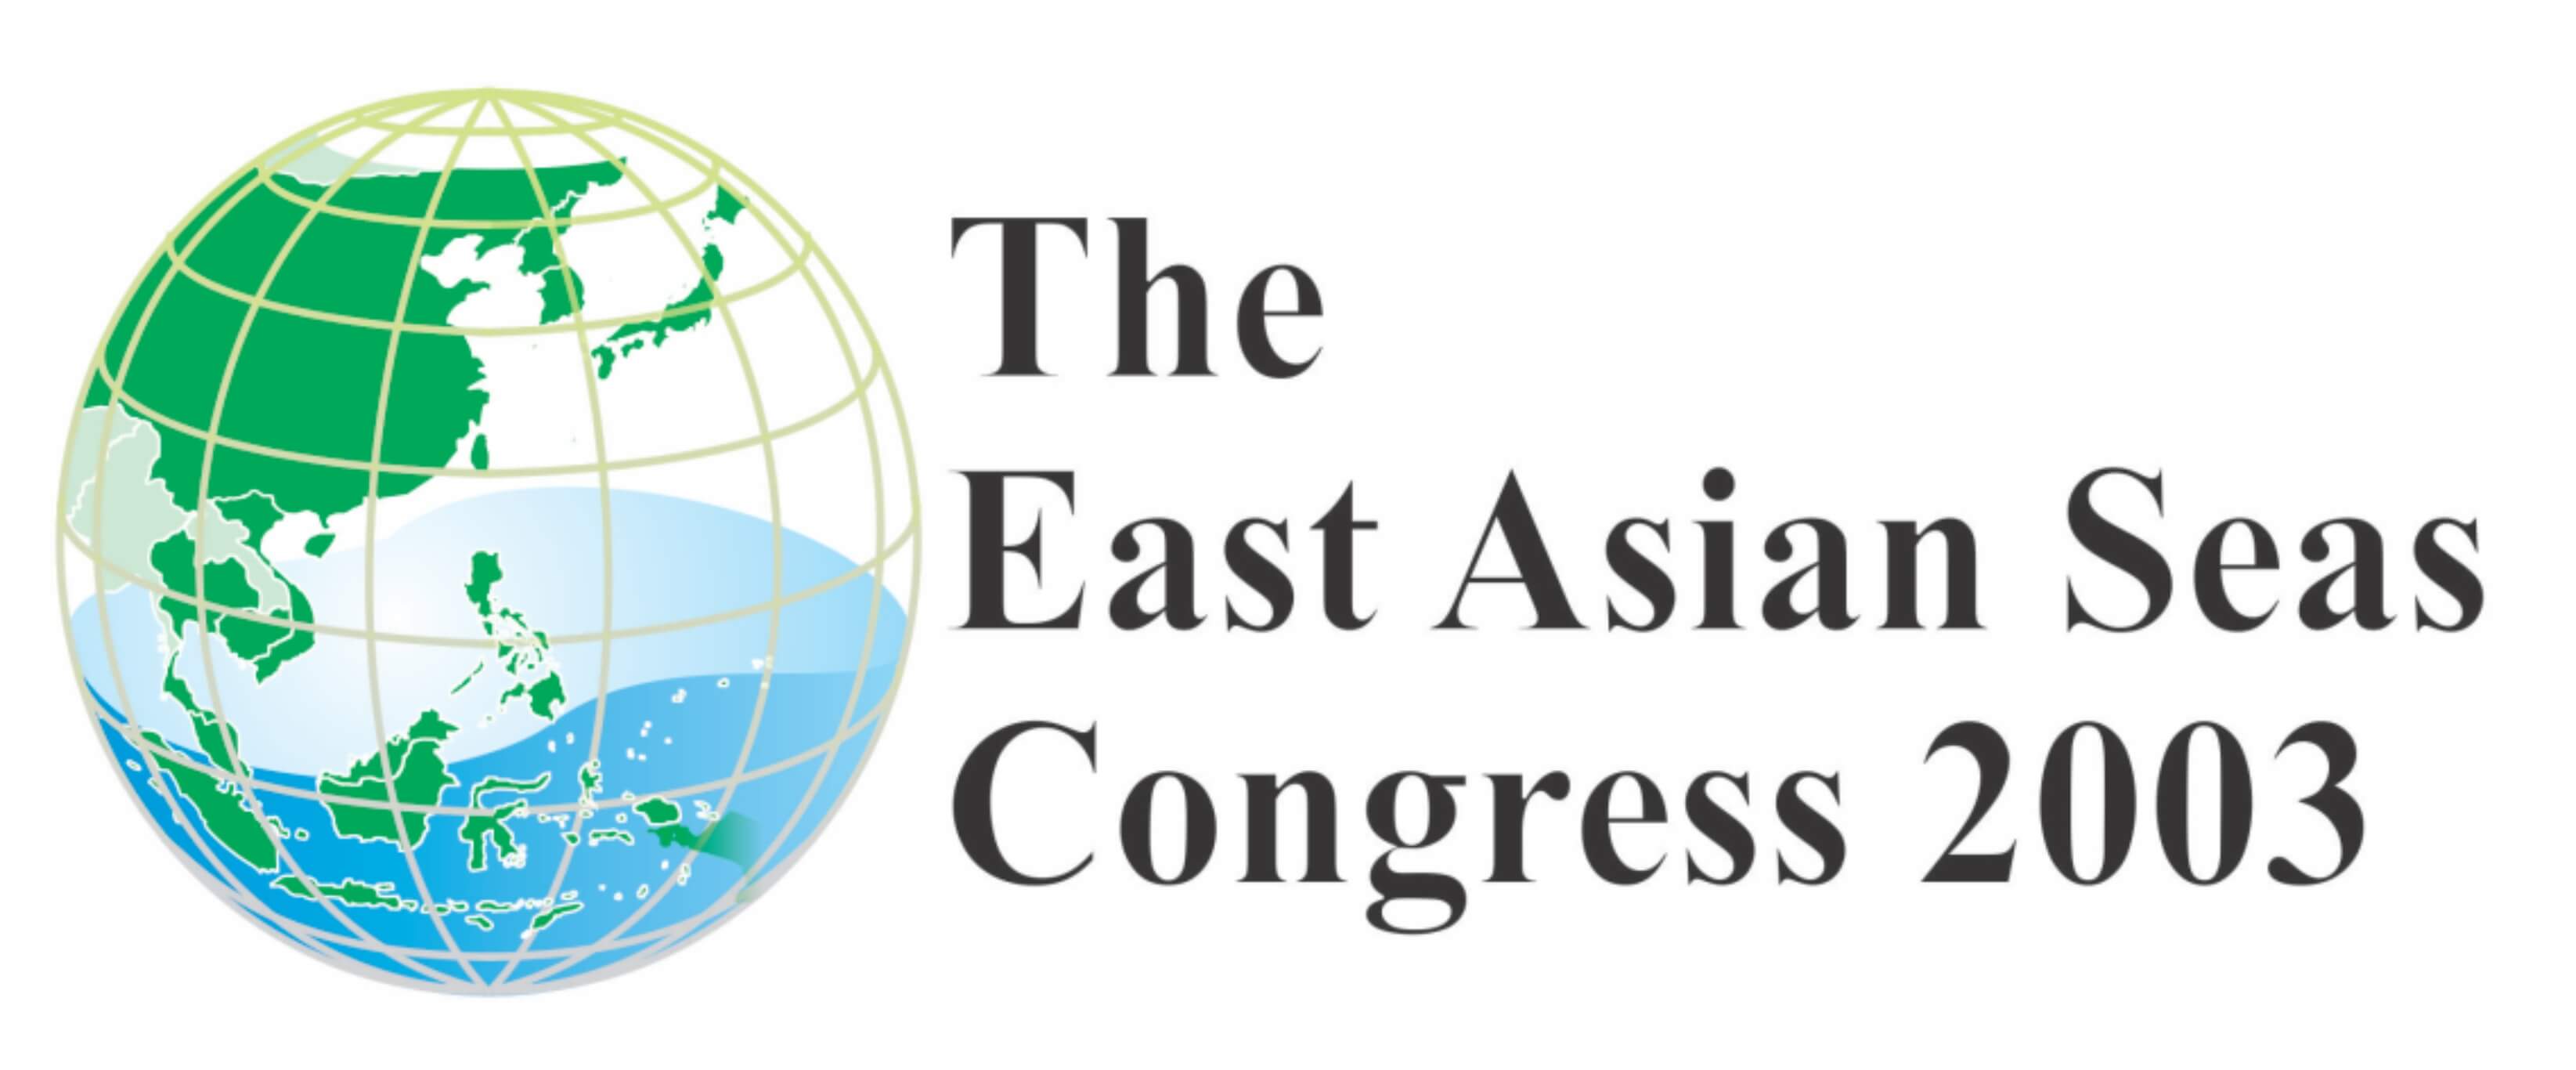 EAS Congress 2003 logo